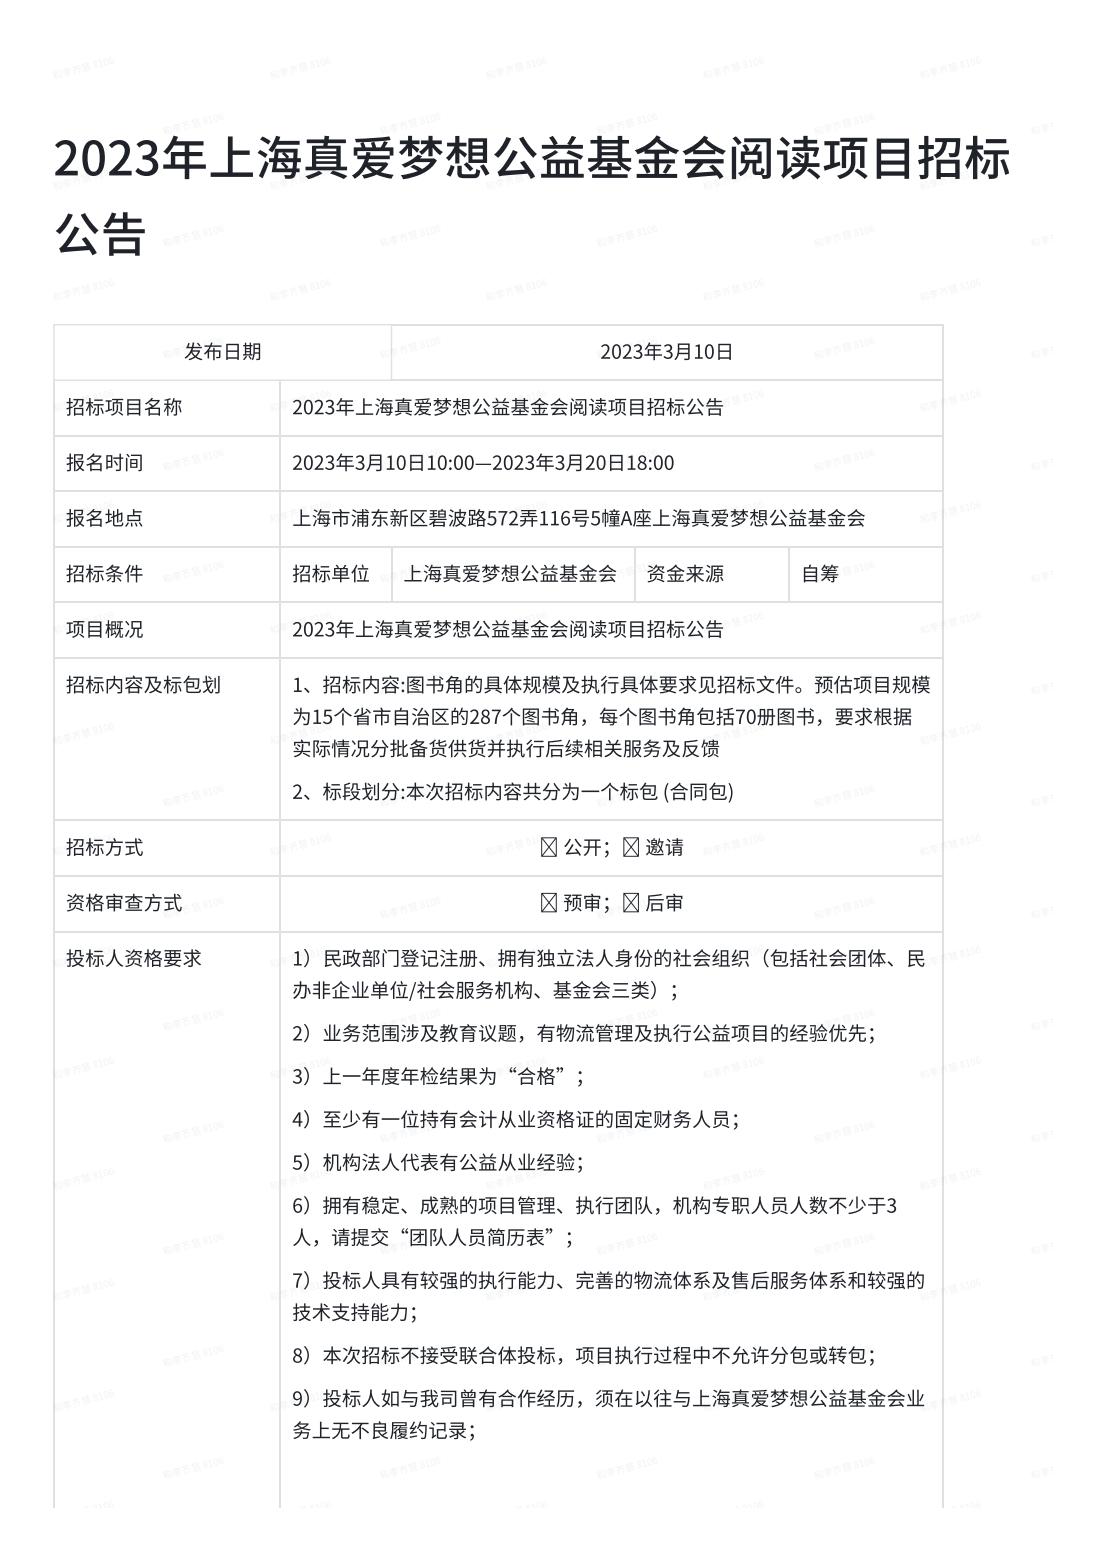 2023年上海真爱梦想公益基金会阅读项目招标公告_00